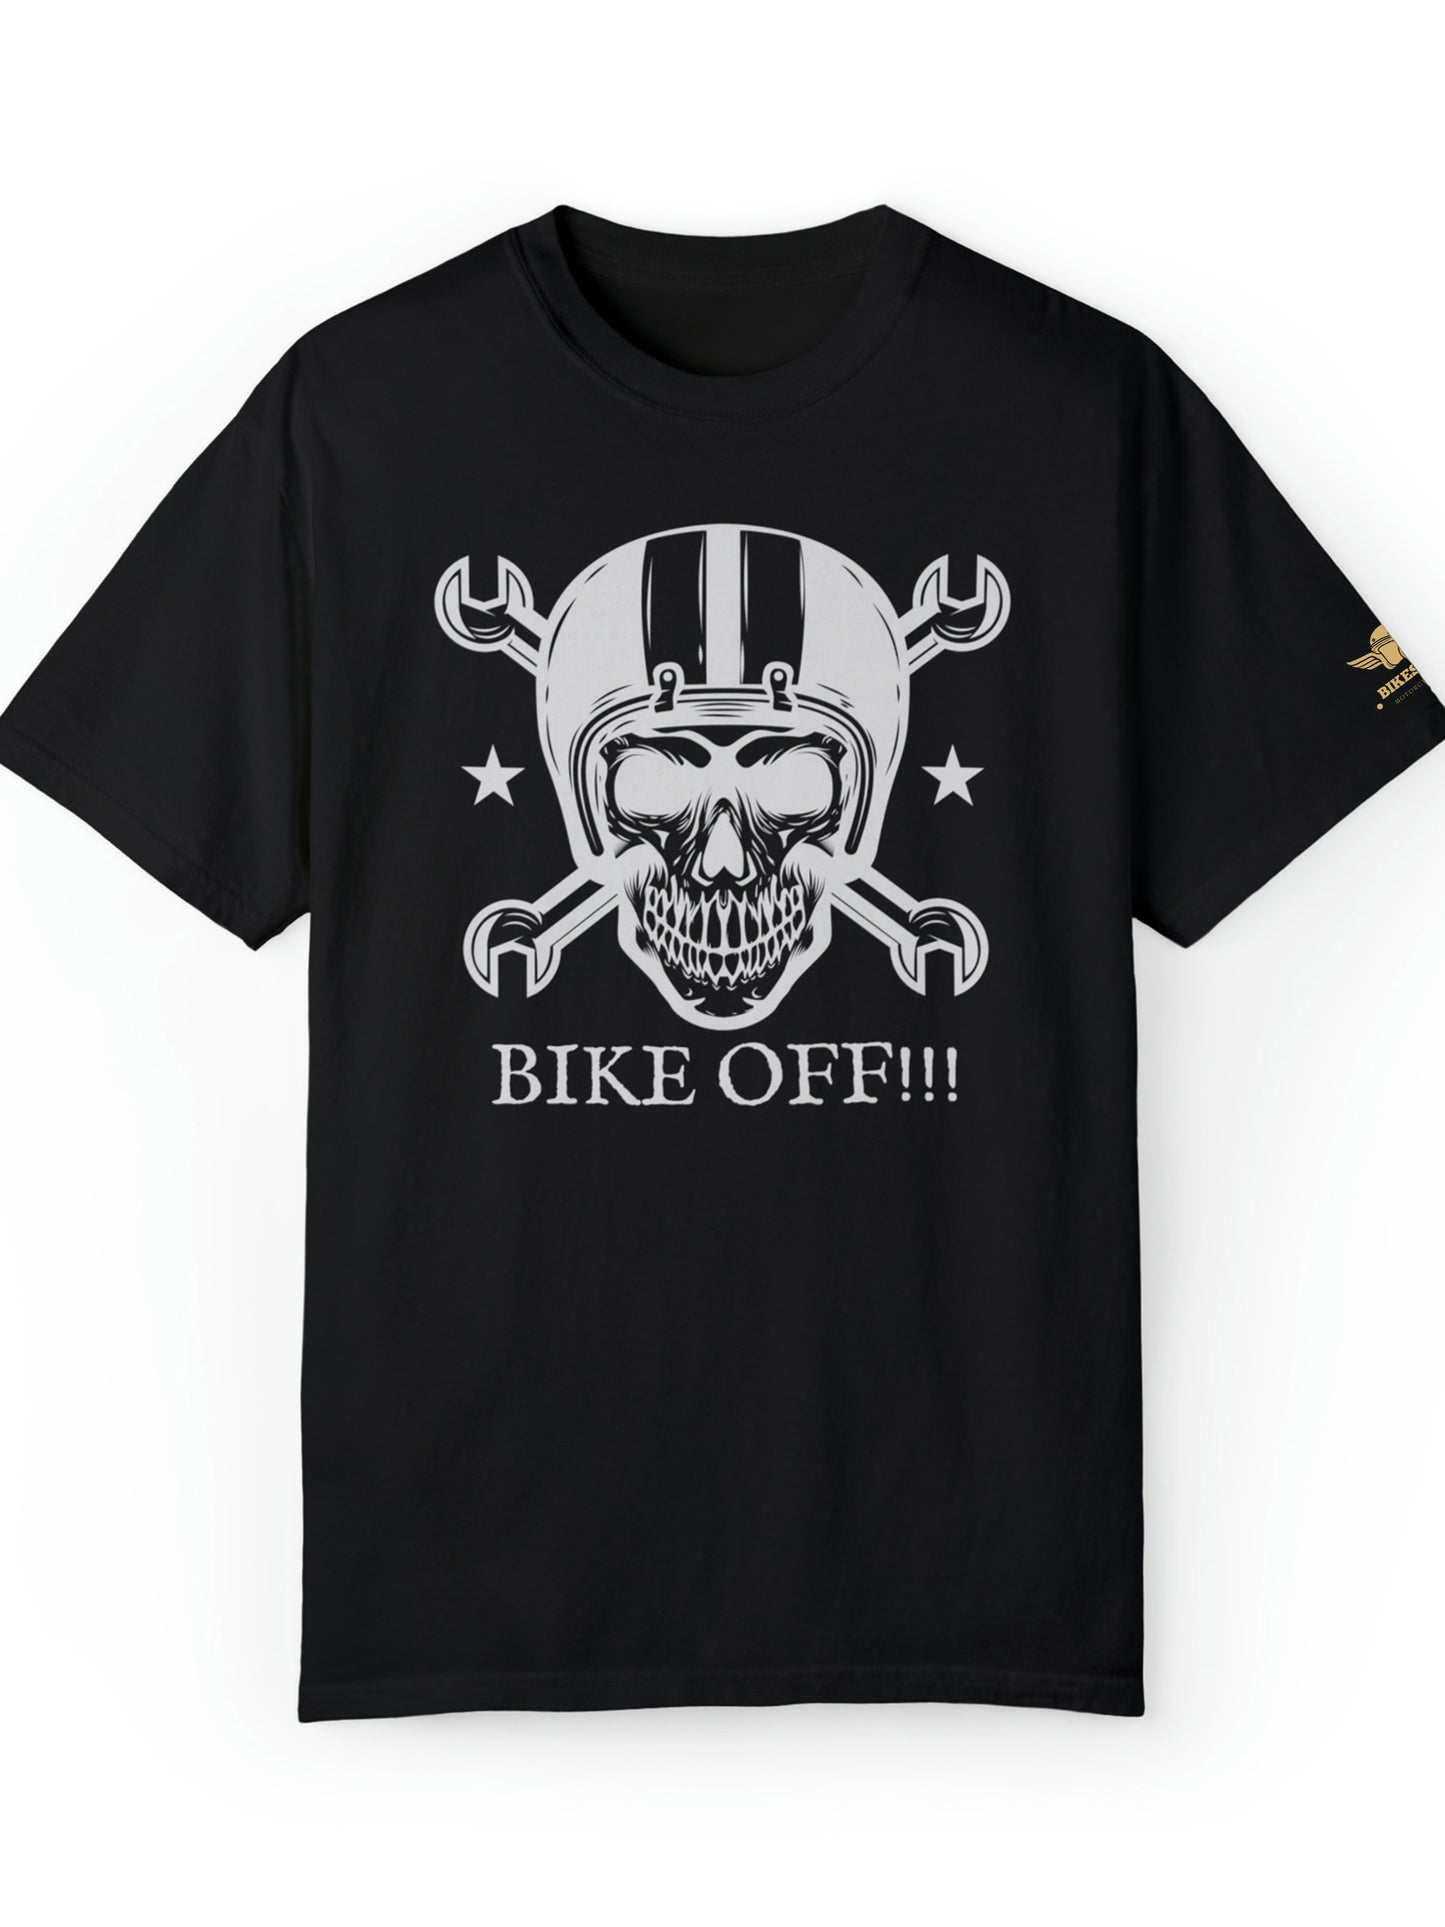 Camiseta moto manga corta negra - Bike off!!!